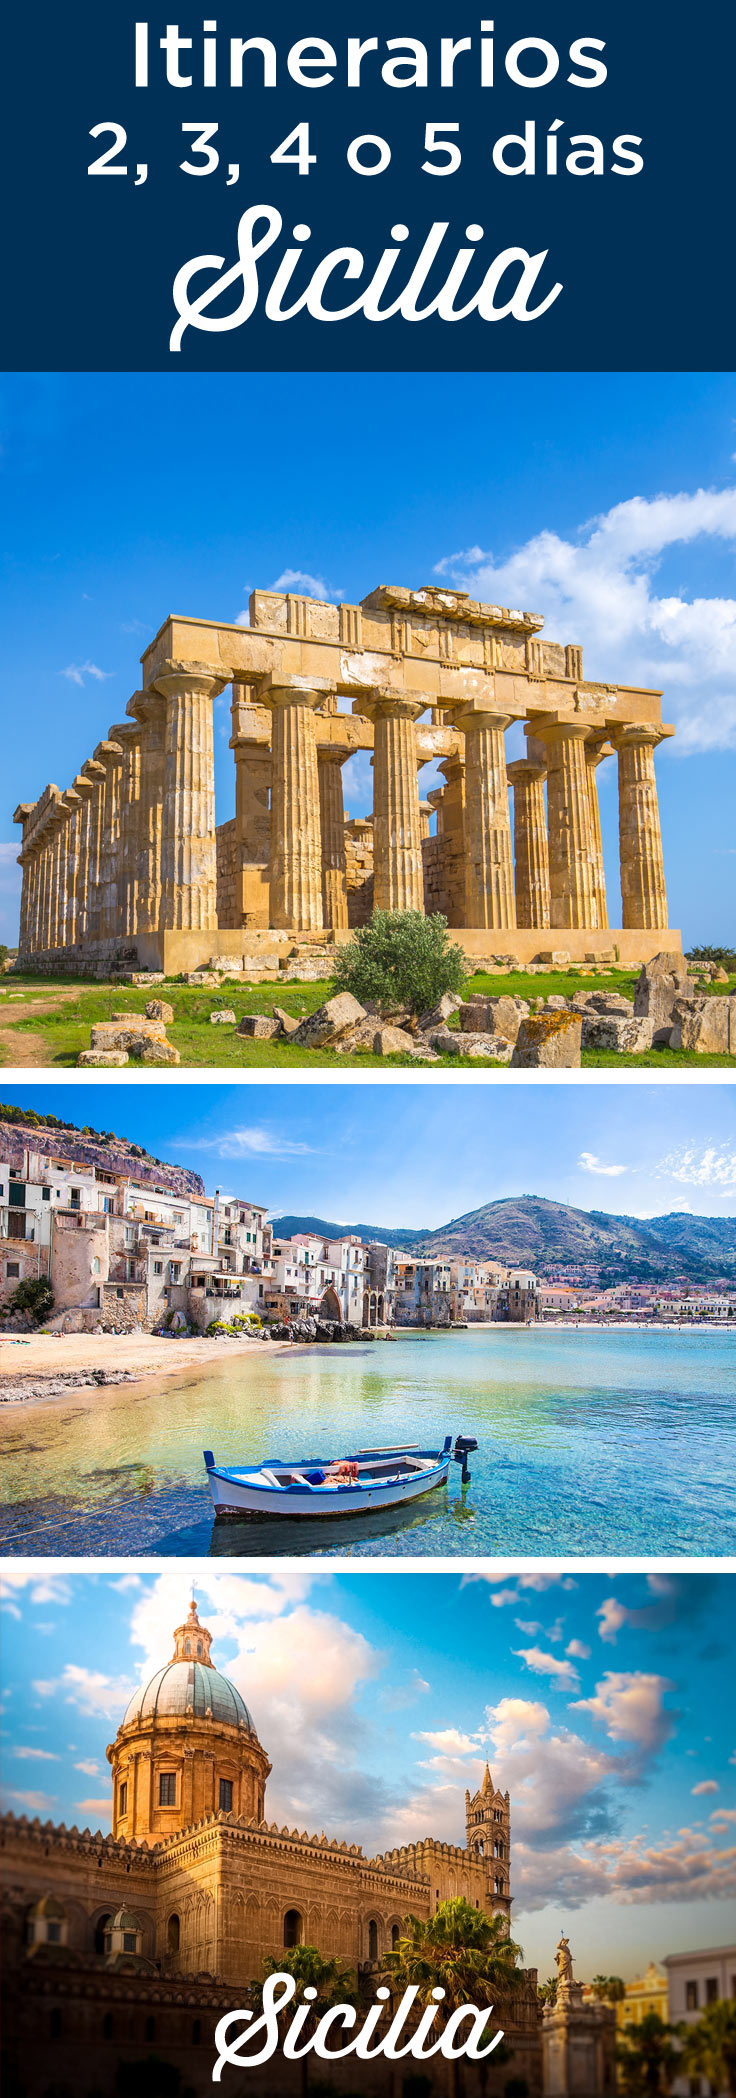 Itinerarios: Sicilia en 2 3 4 5 días